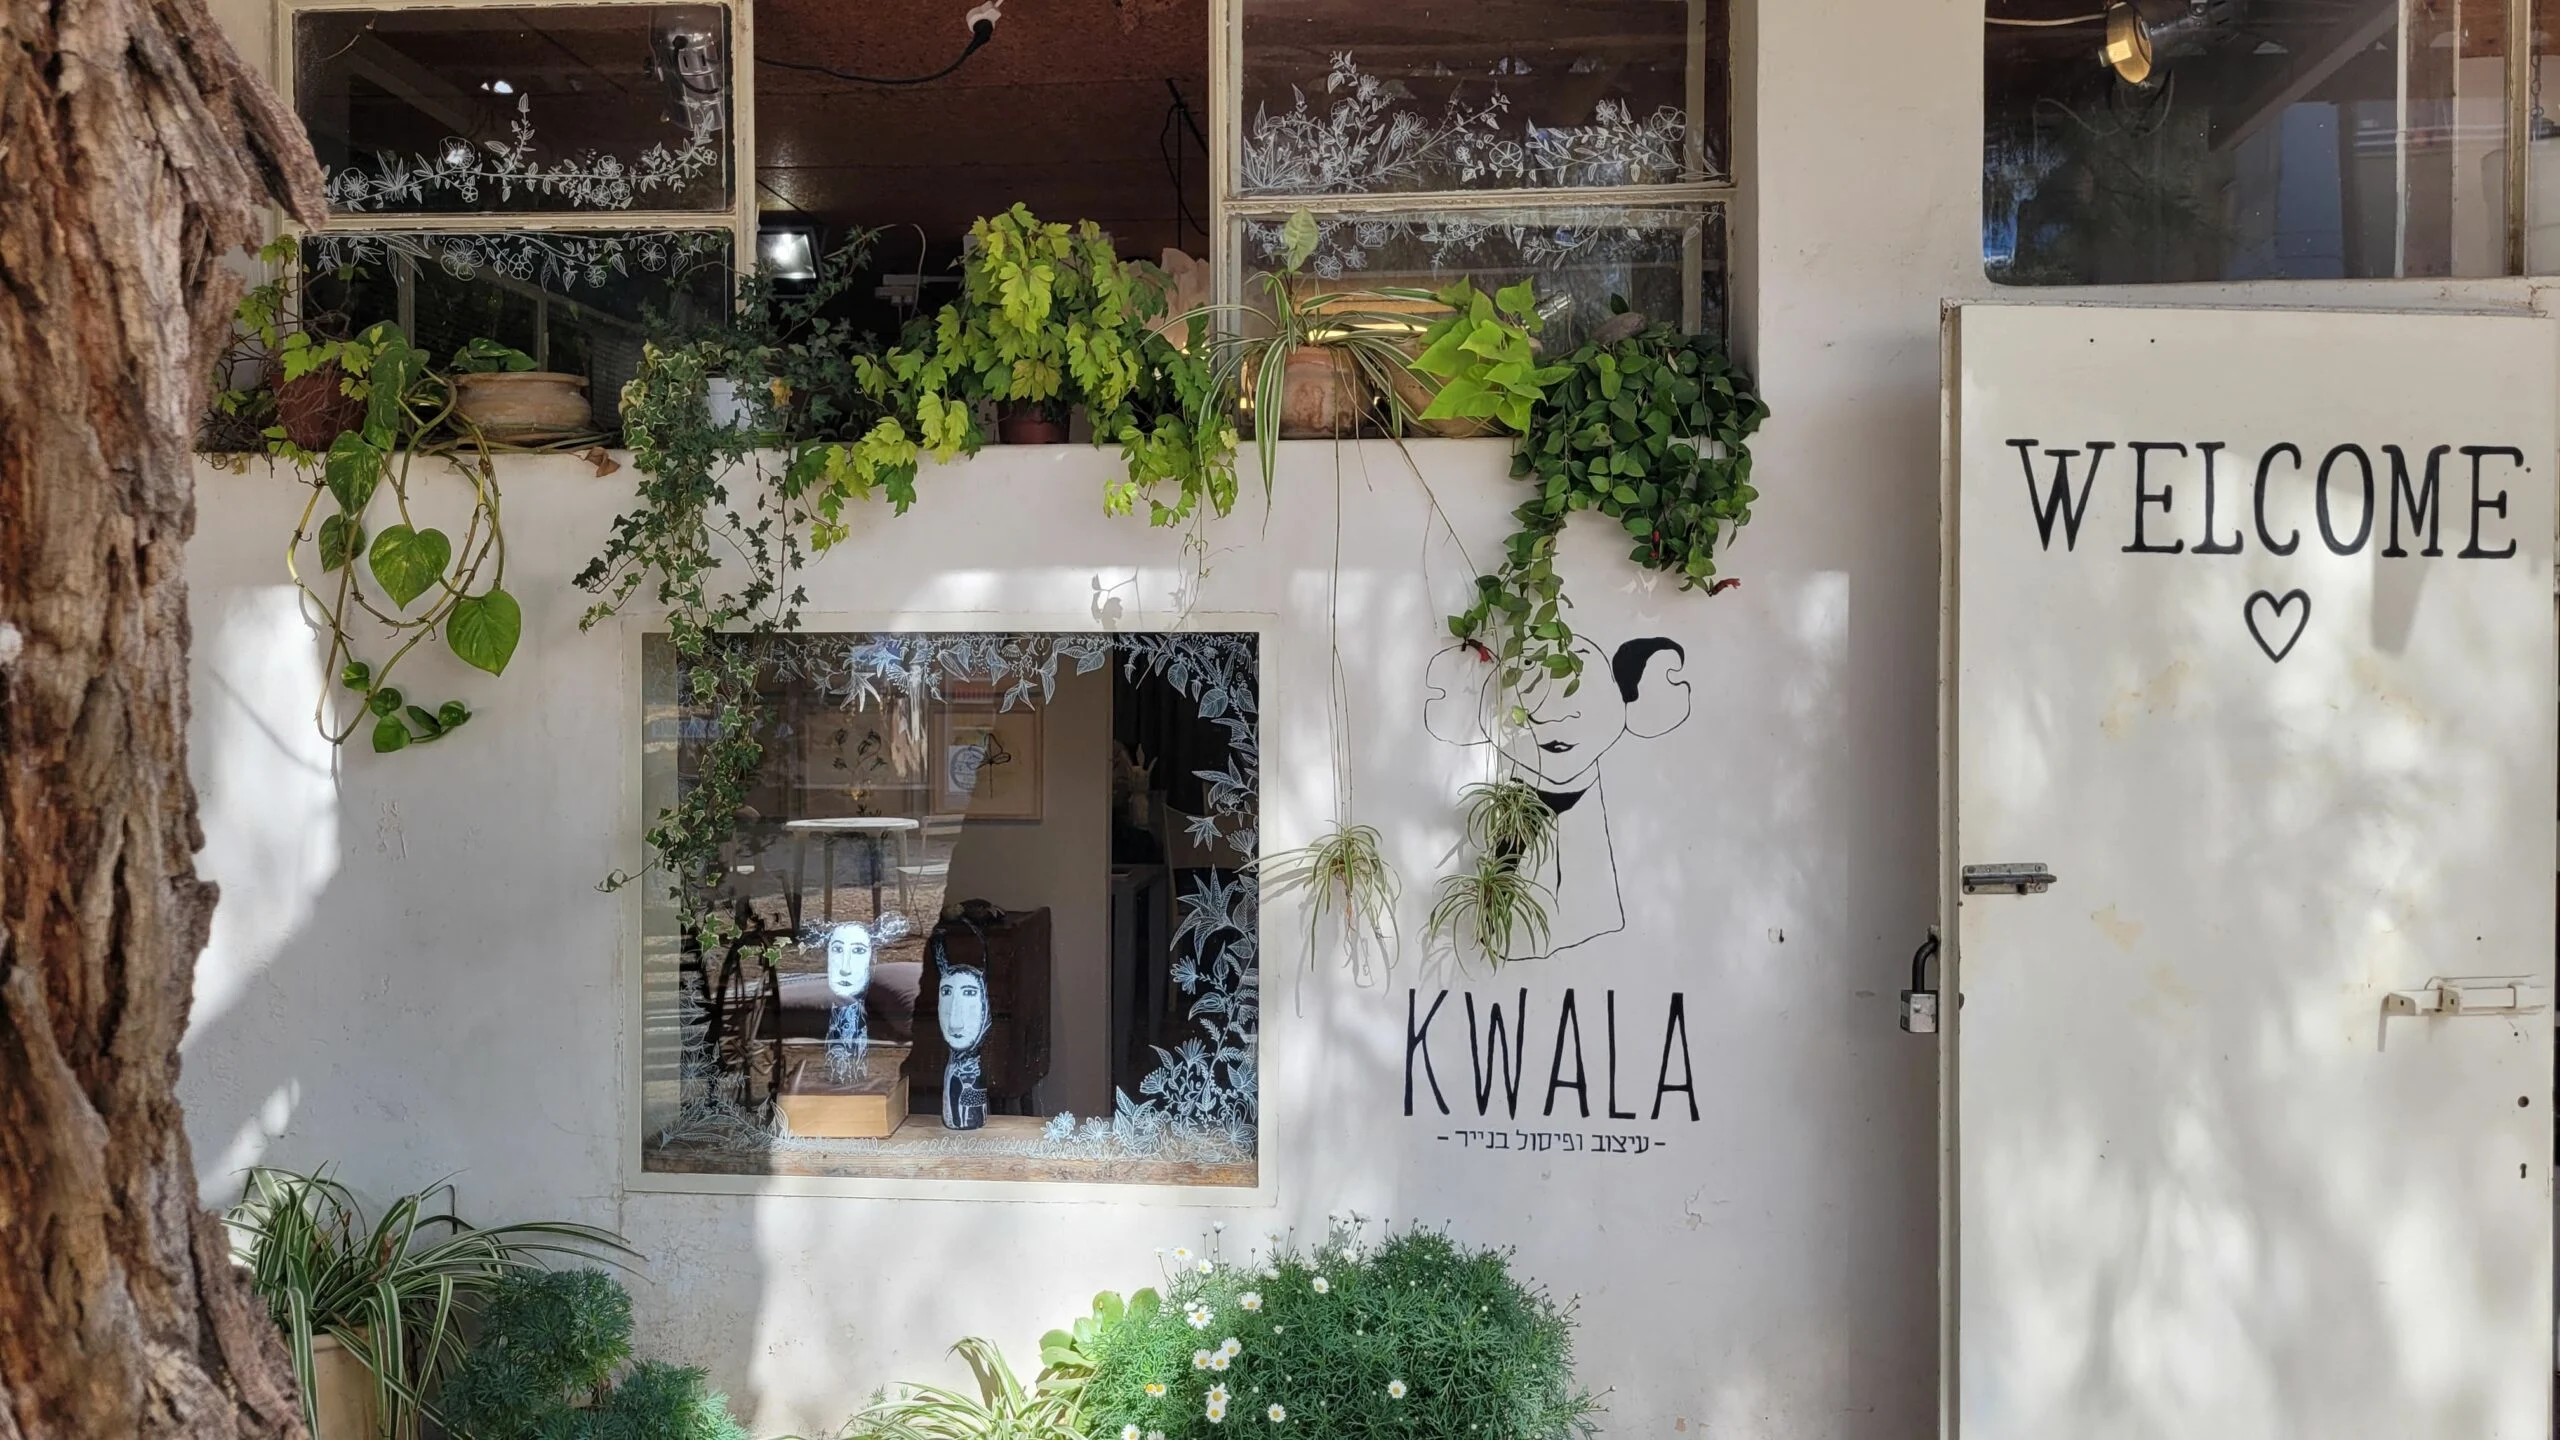 הסטודיו של גליה שמחאי, בעלת המותג KWALA